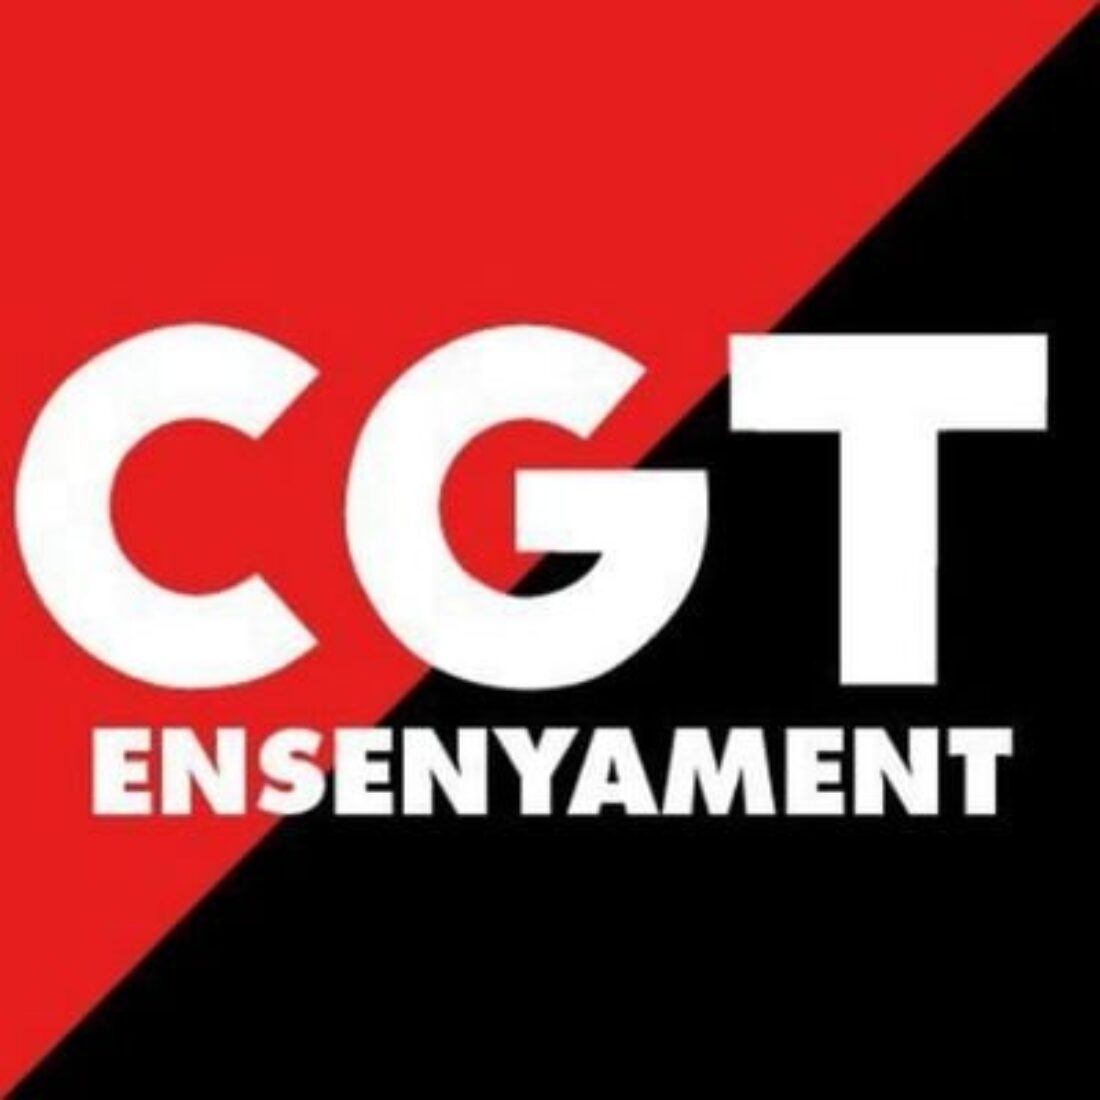 CGT rebutja les excuses del Departament d’Educació en responsabilitzar alumnat, famílies i professorat en lloc d’afrontar la problemàtica i invertir el 6% del PIB en educació pública